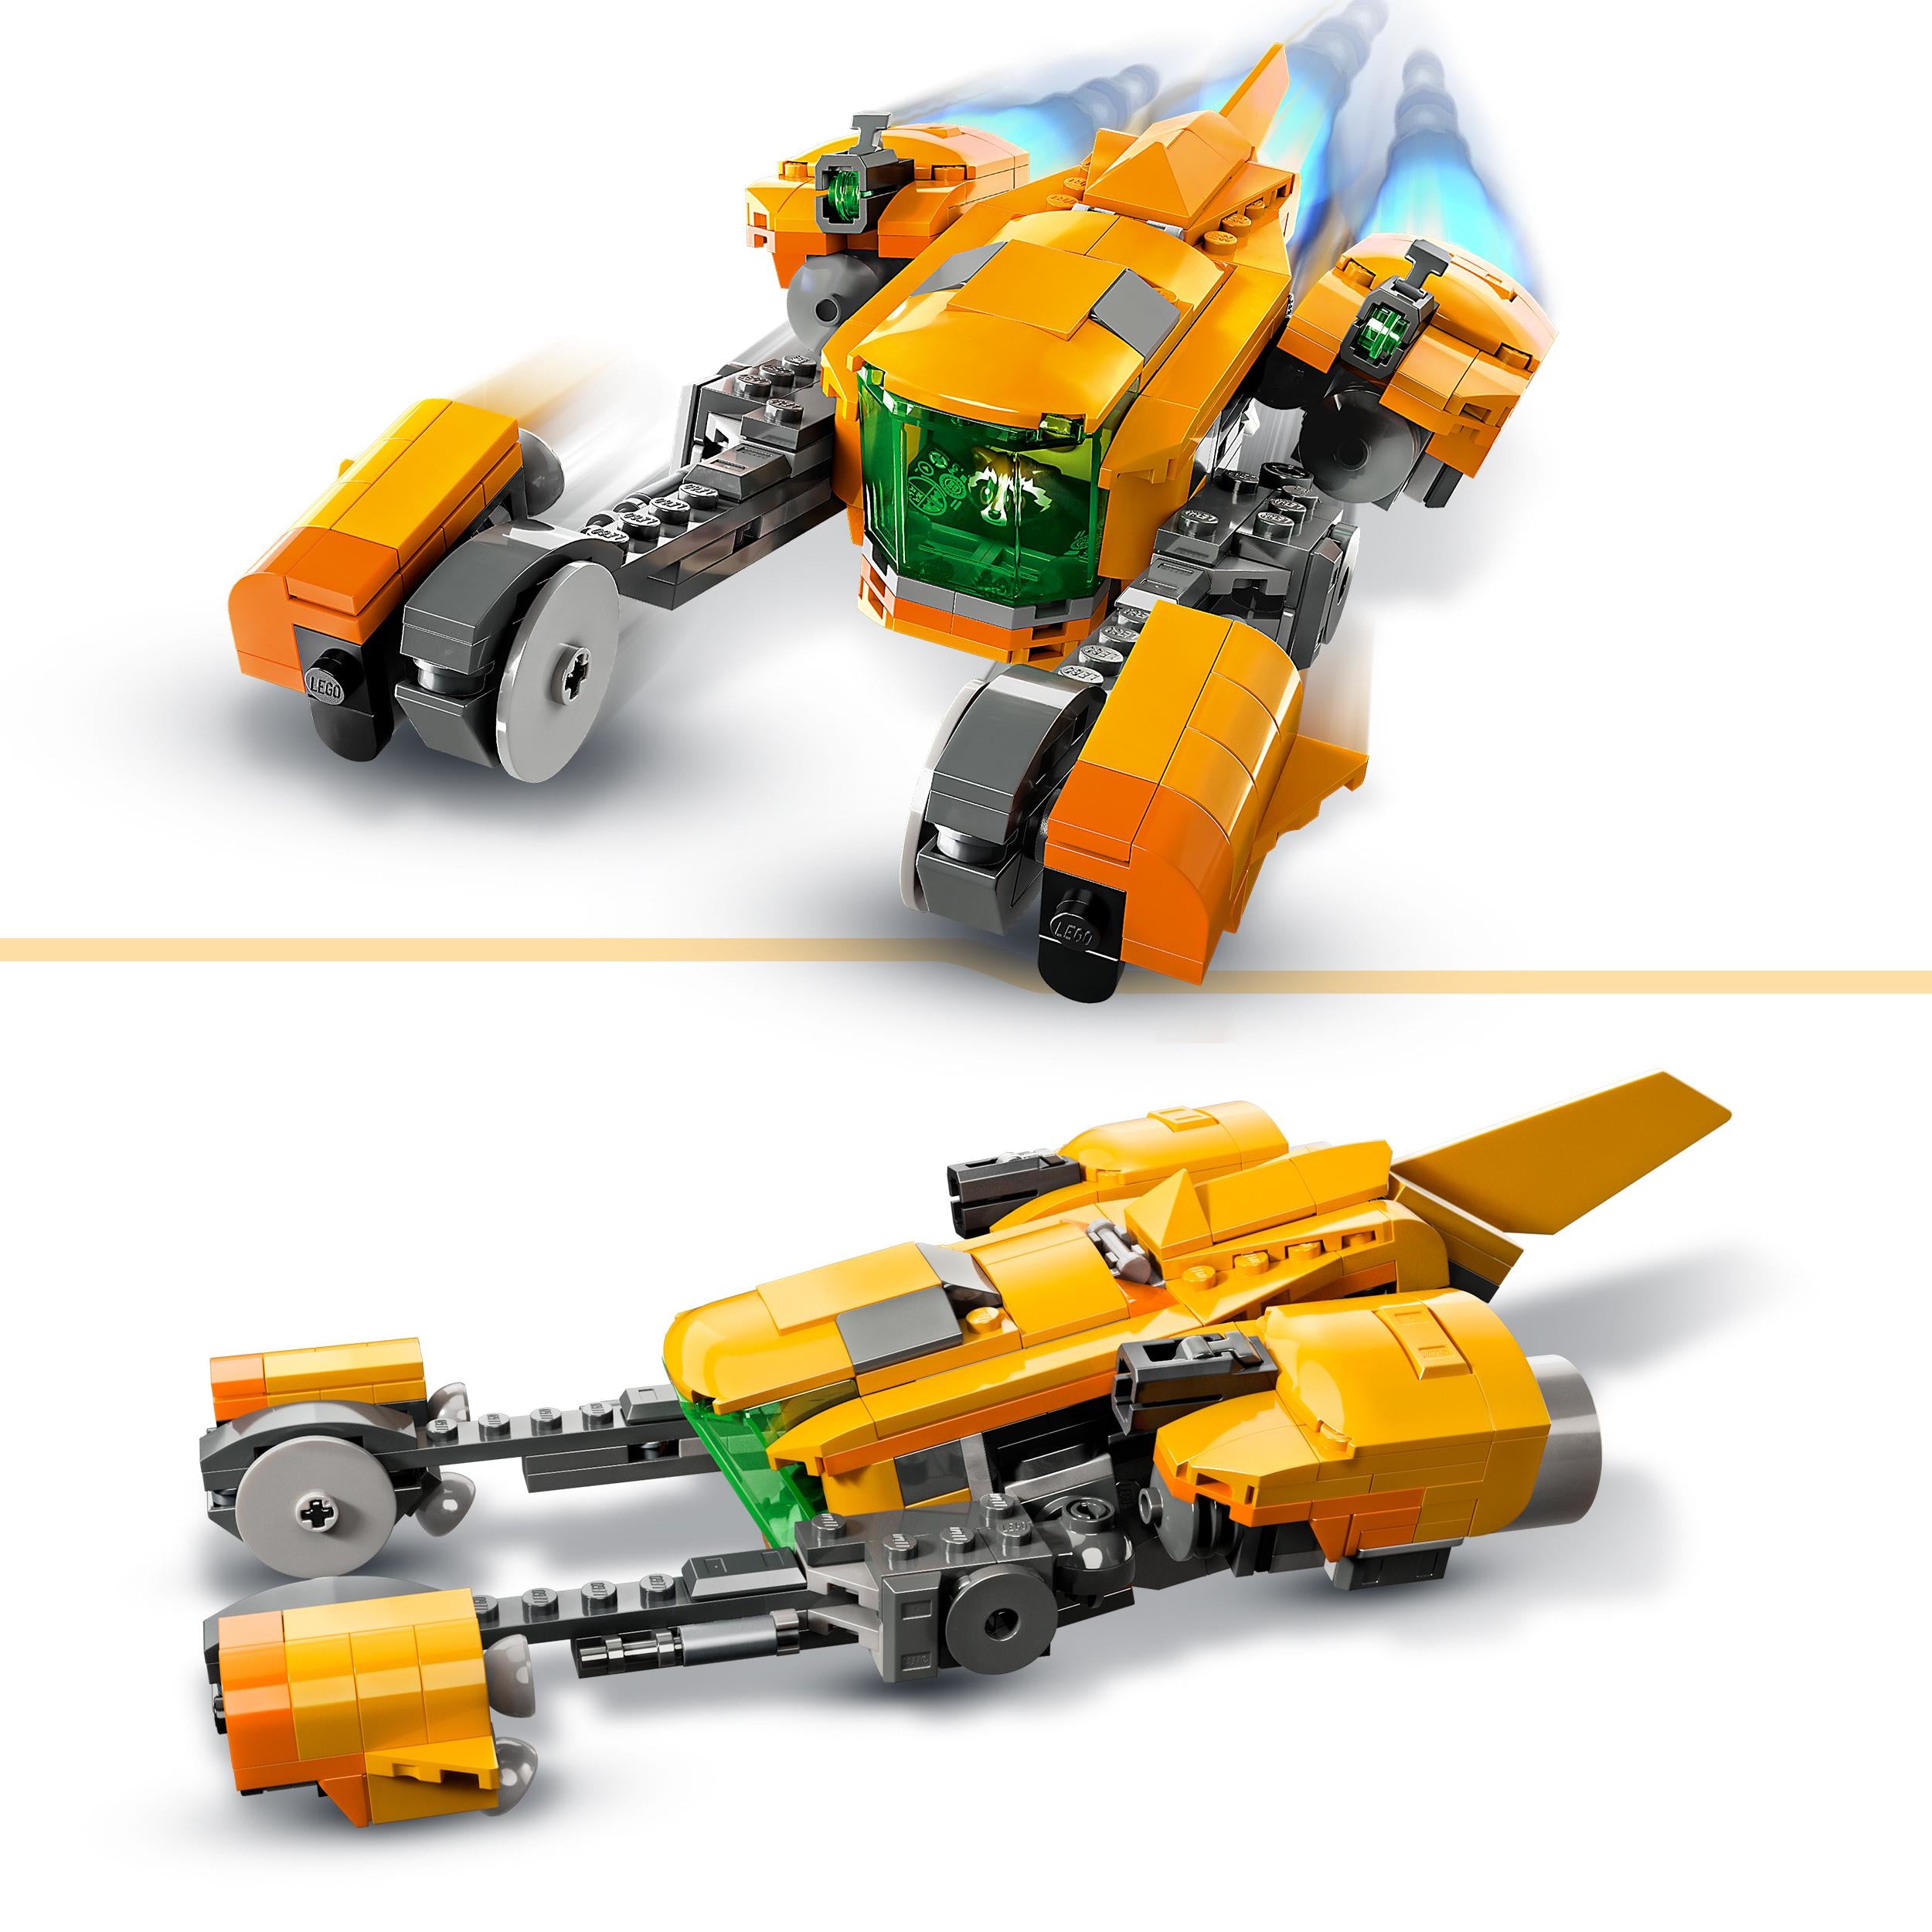 76254 - LEGO - Superheroes - Astronave di Baby Rocket